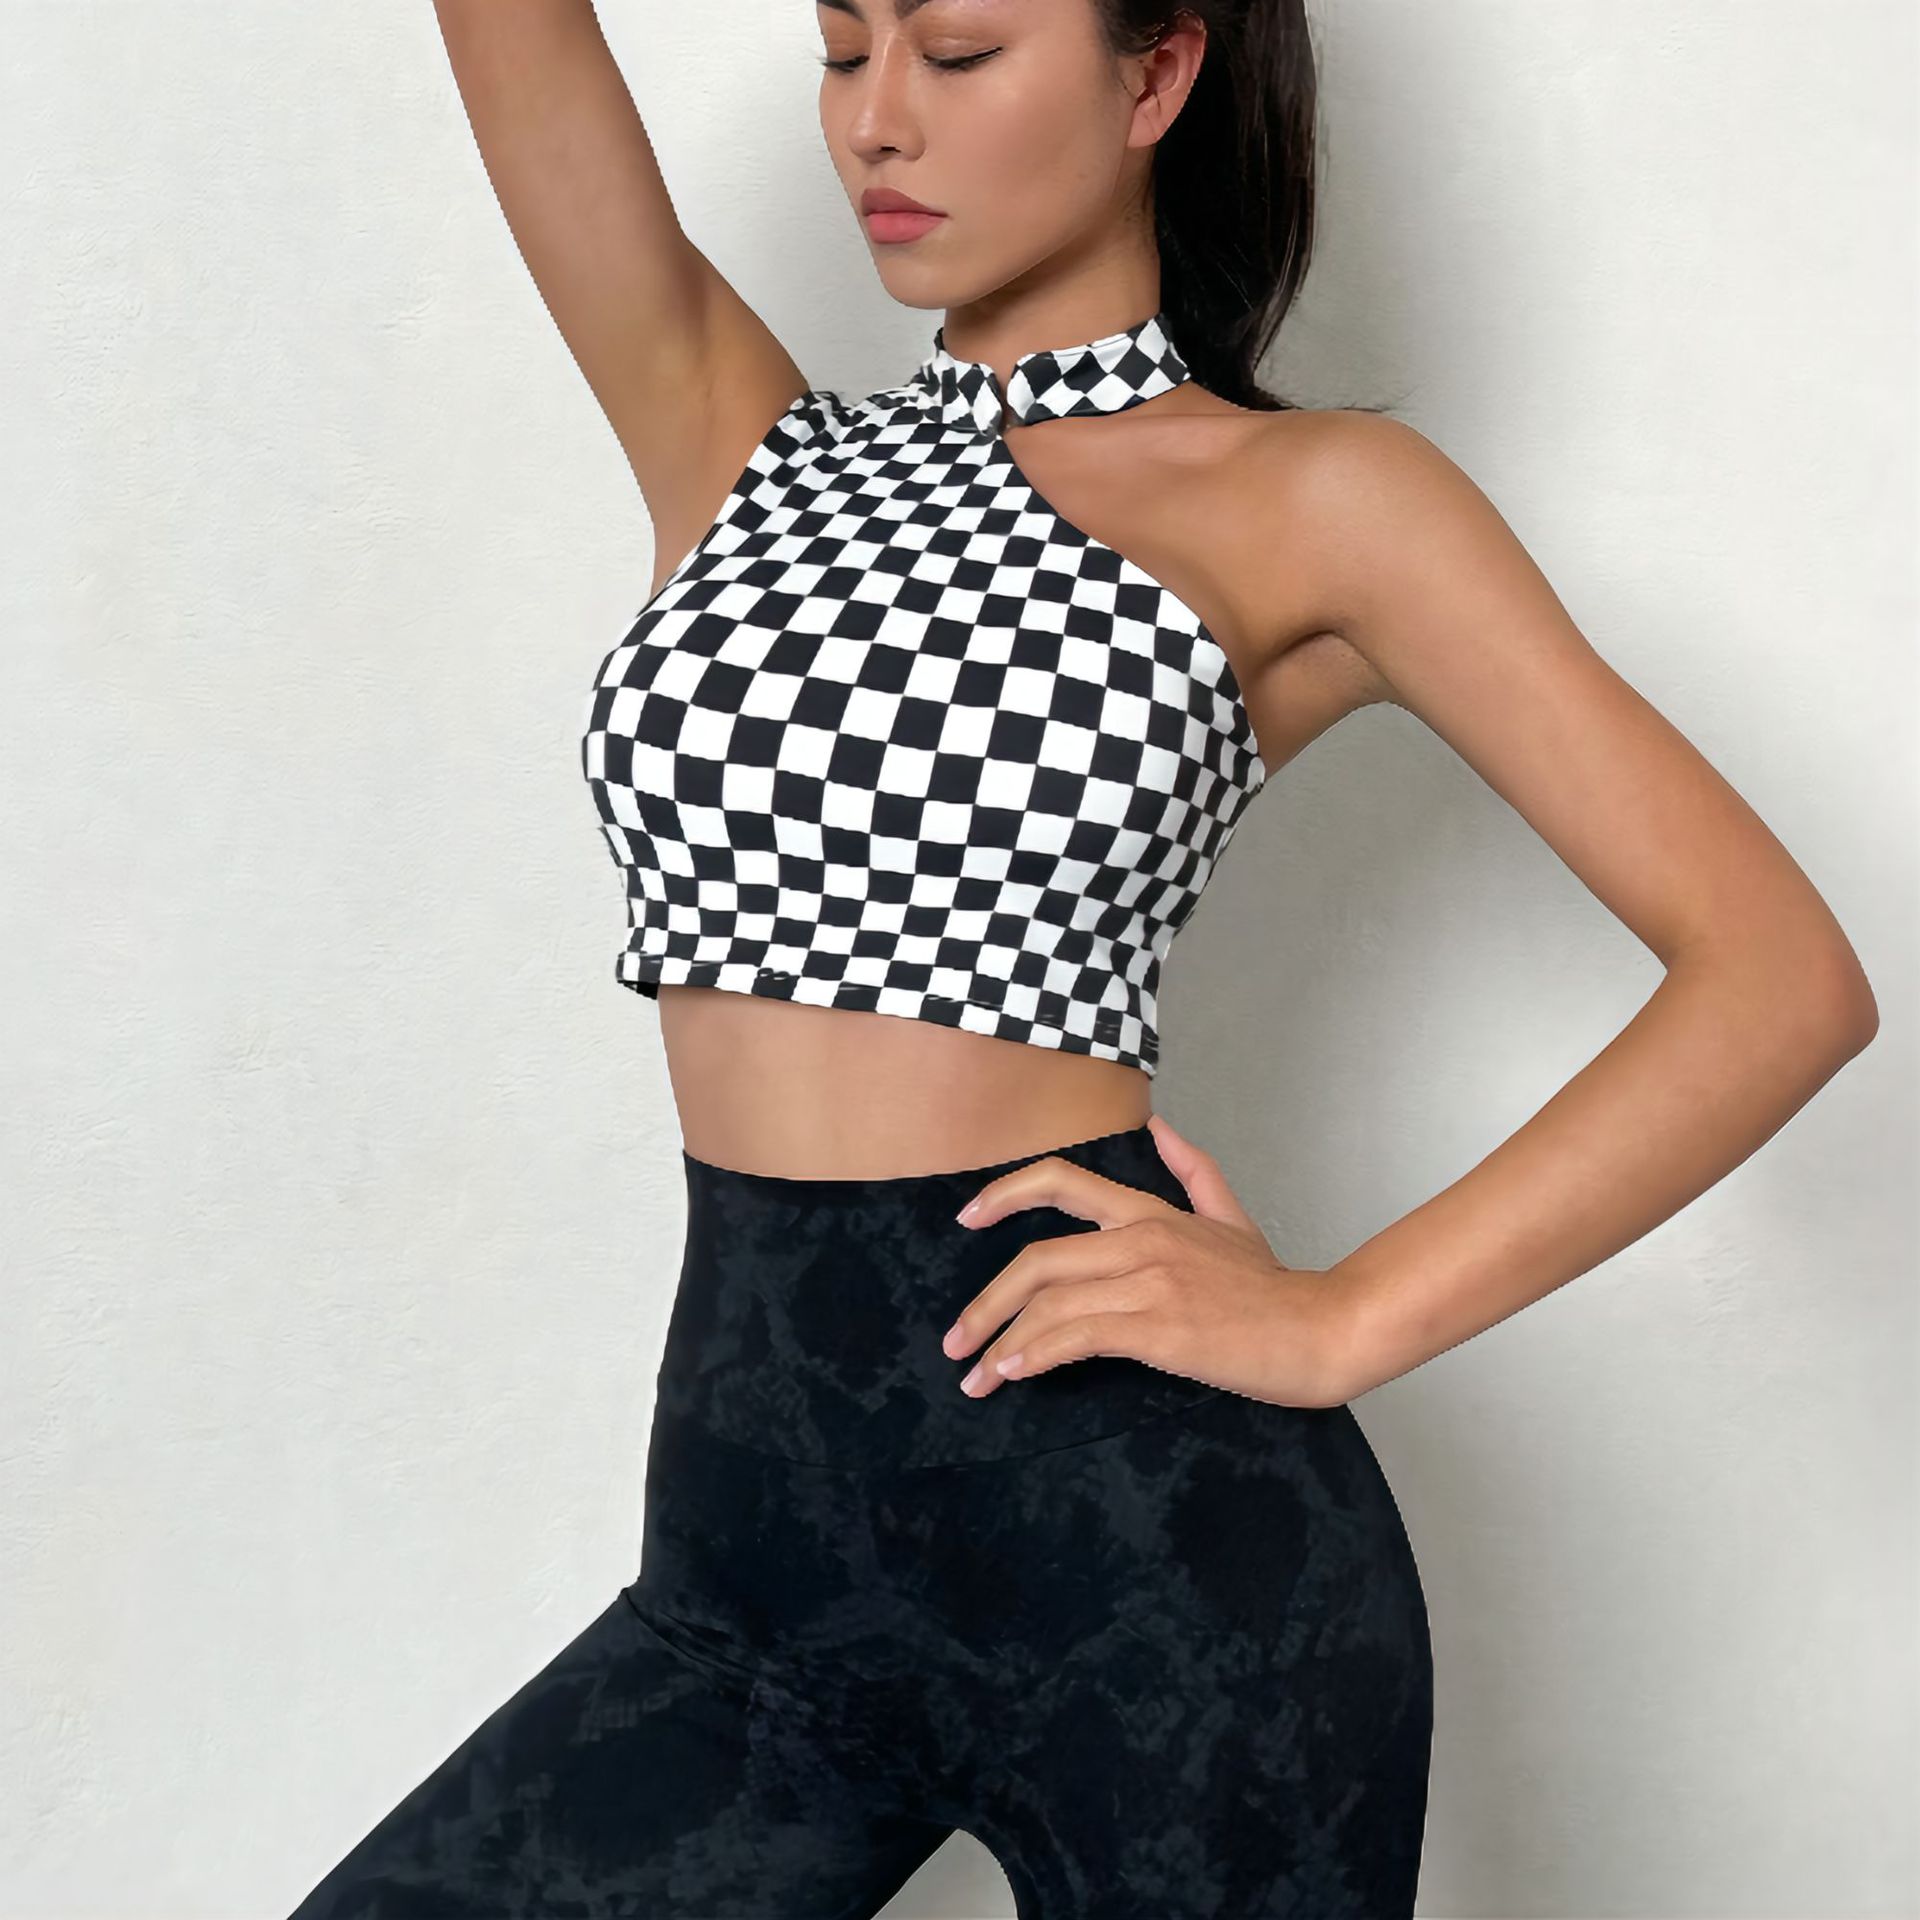 SEXY GG Lattice Design women's Sports Bra Shockproof Underwear Top